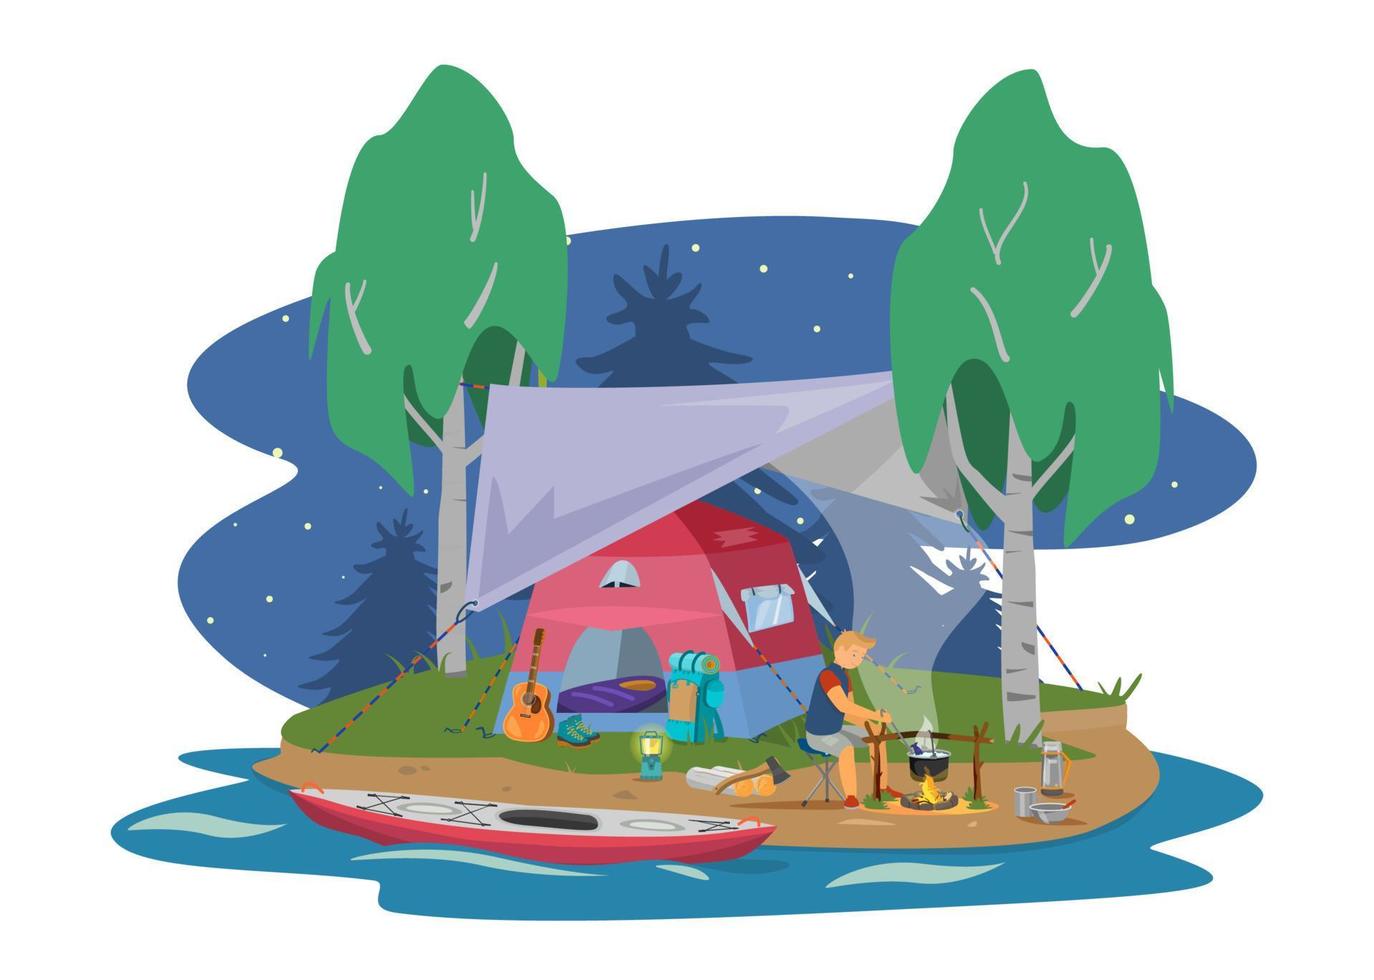 sitio de campamento de verano nocturno con carpa bajo toldo, fogata en la ilustración del vector de la costa del río.